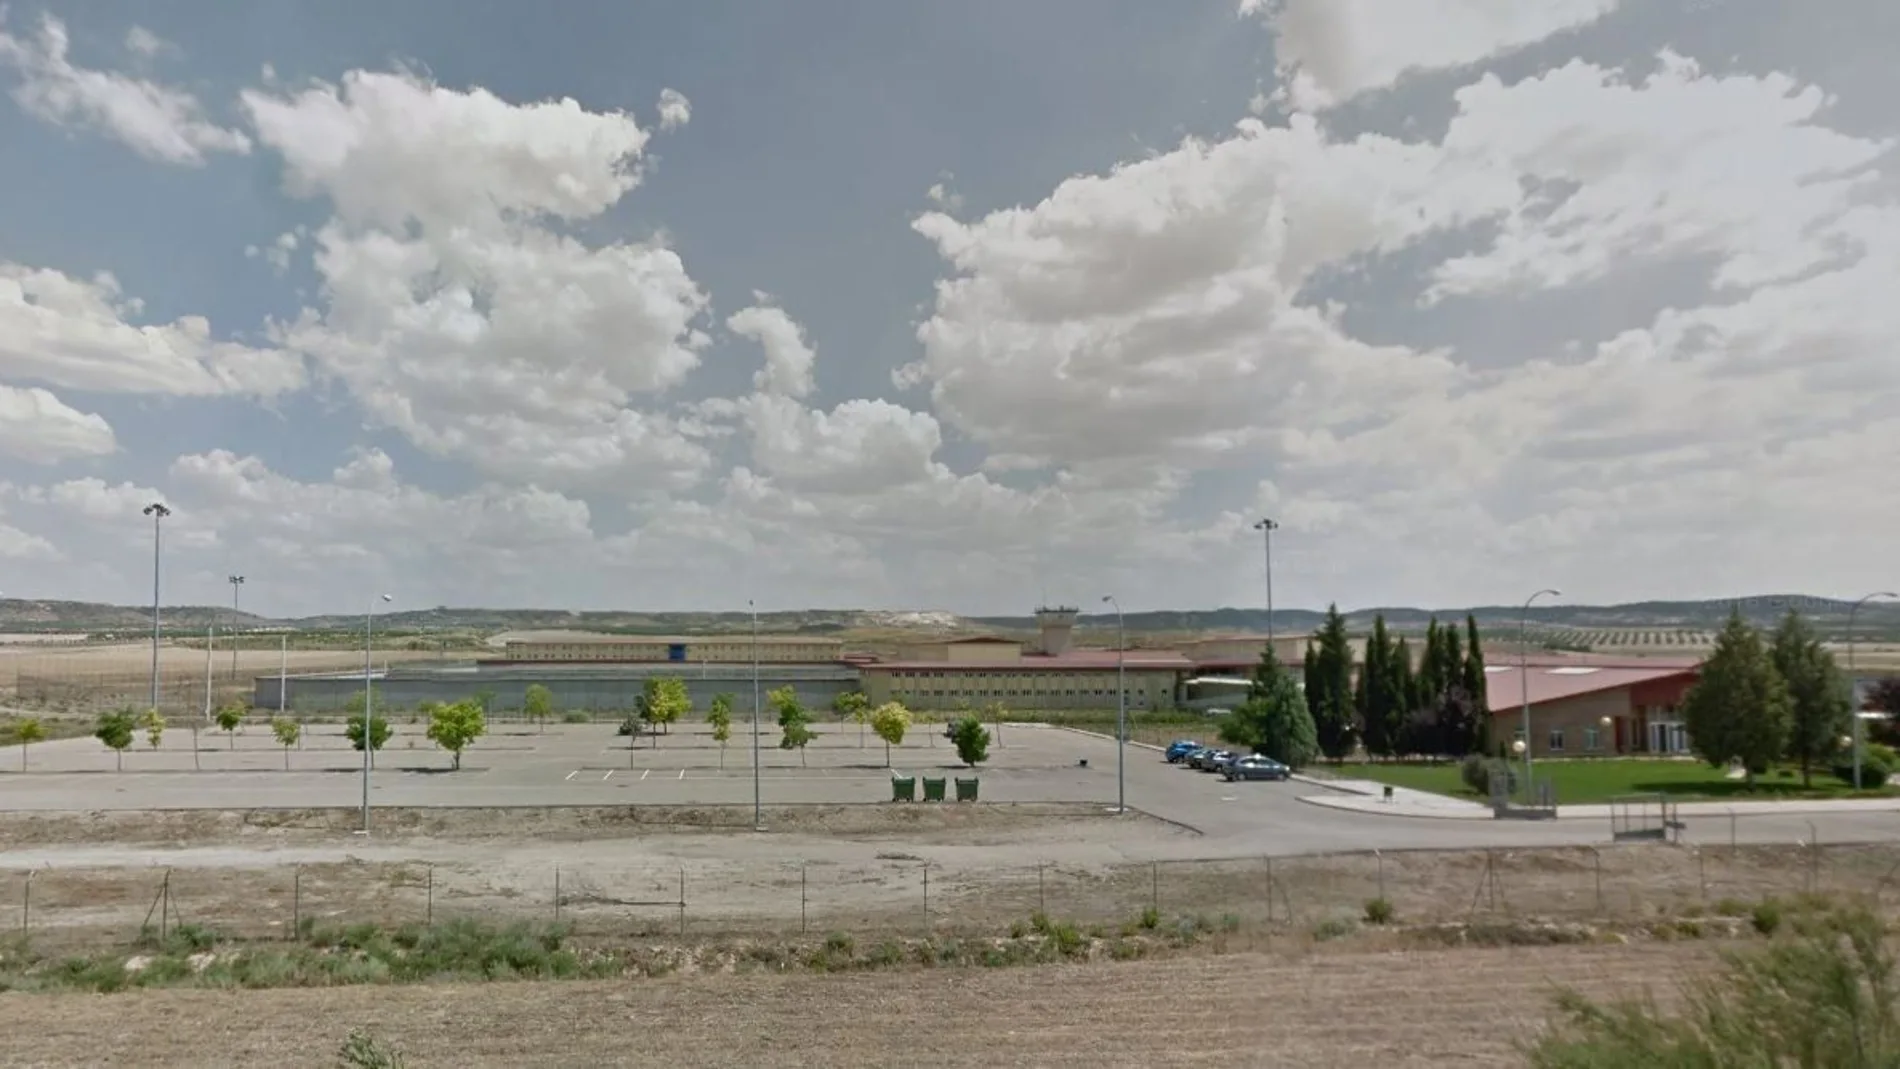 Patio del centro penitenciario de Madrid VI, en Aranjuez